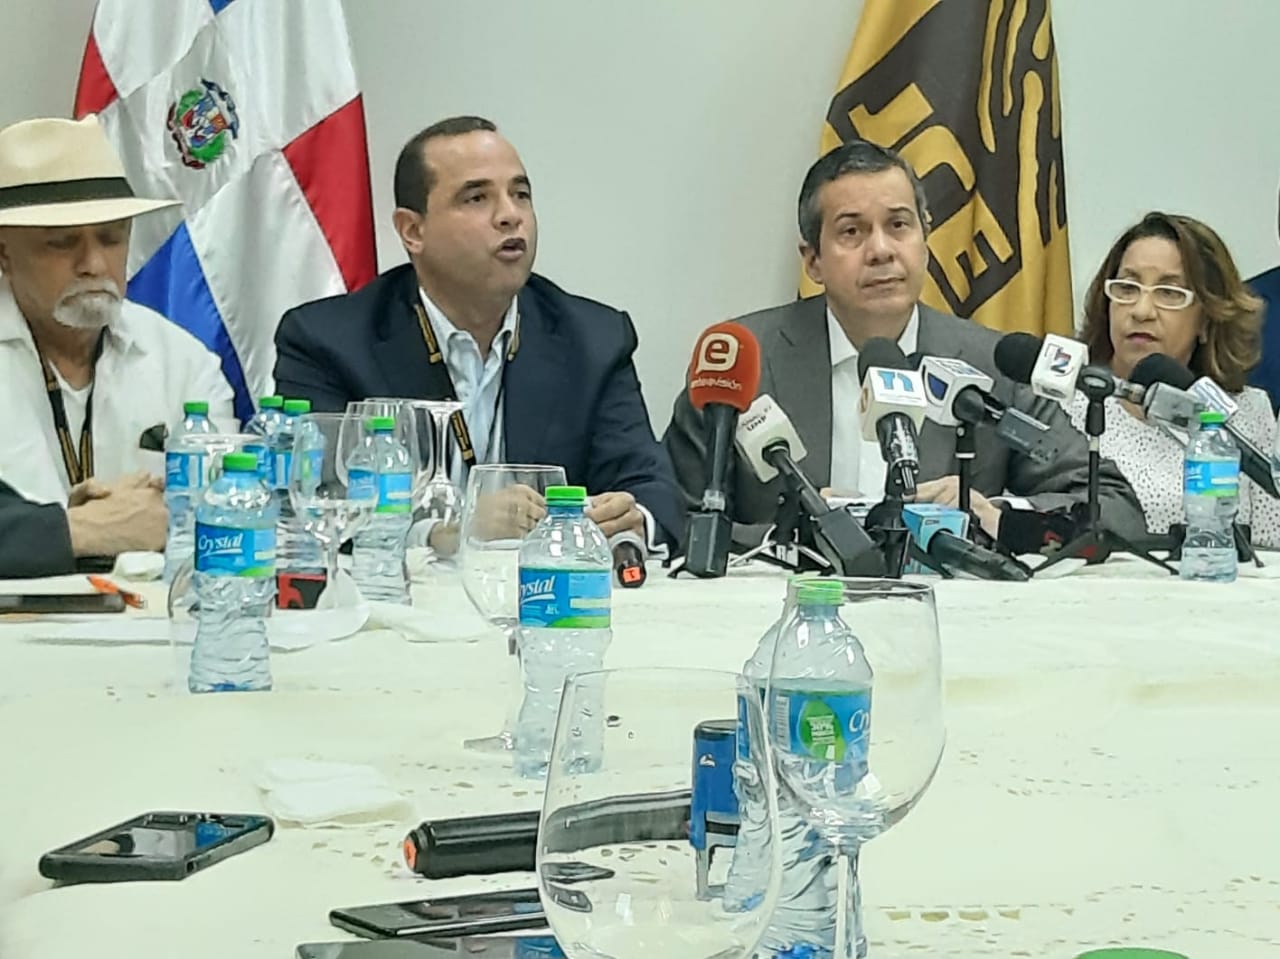 Partidos políticos de oposición solicitan audiencia “urgente” a la JCE